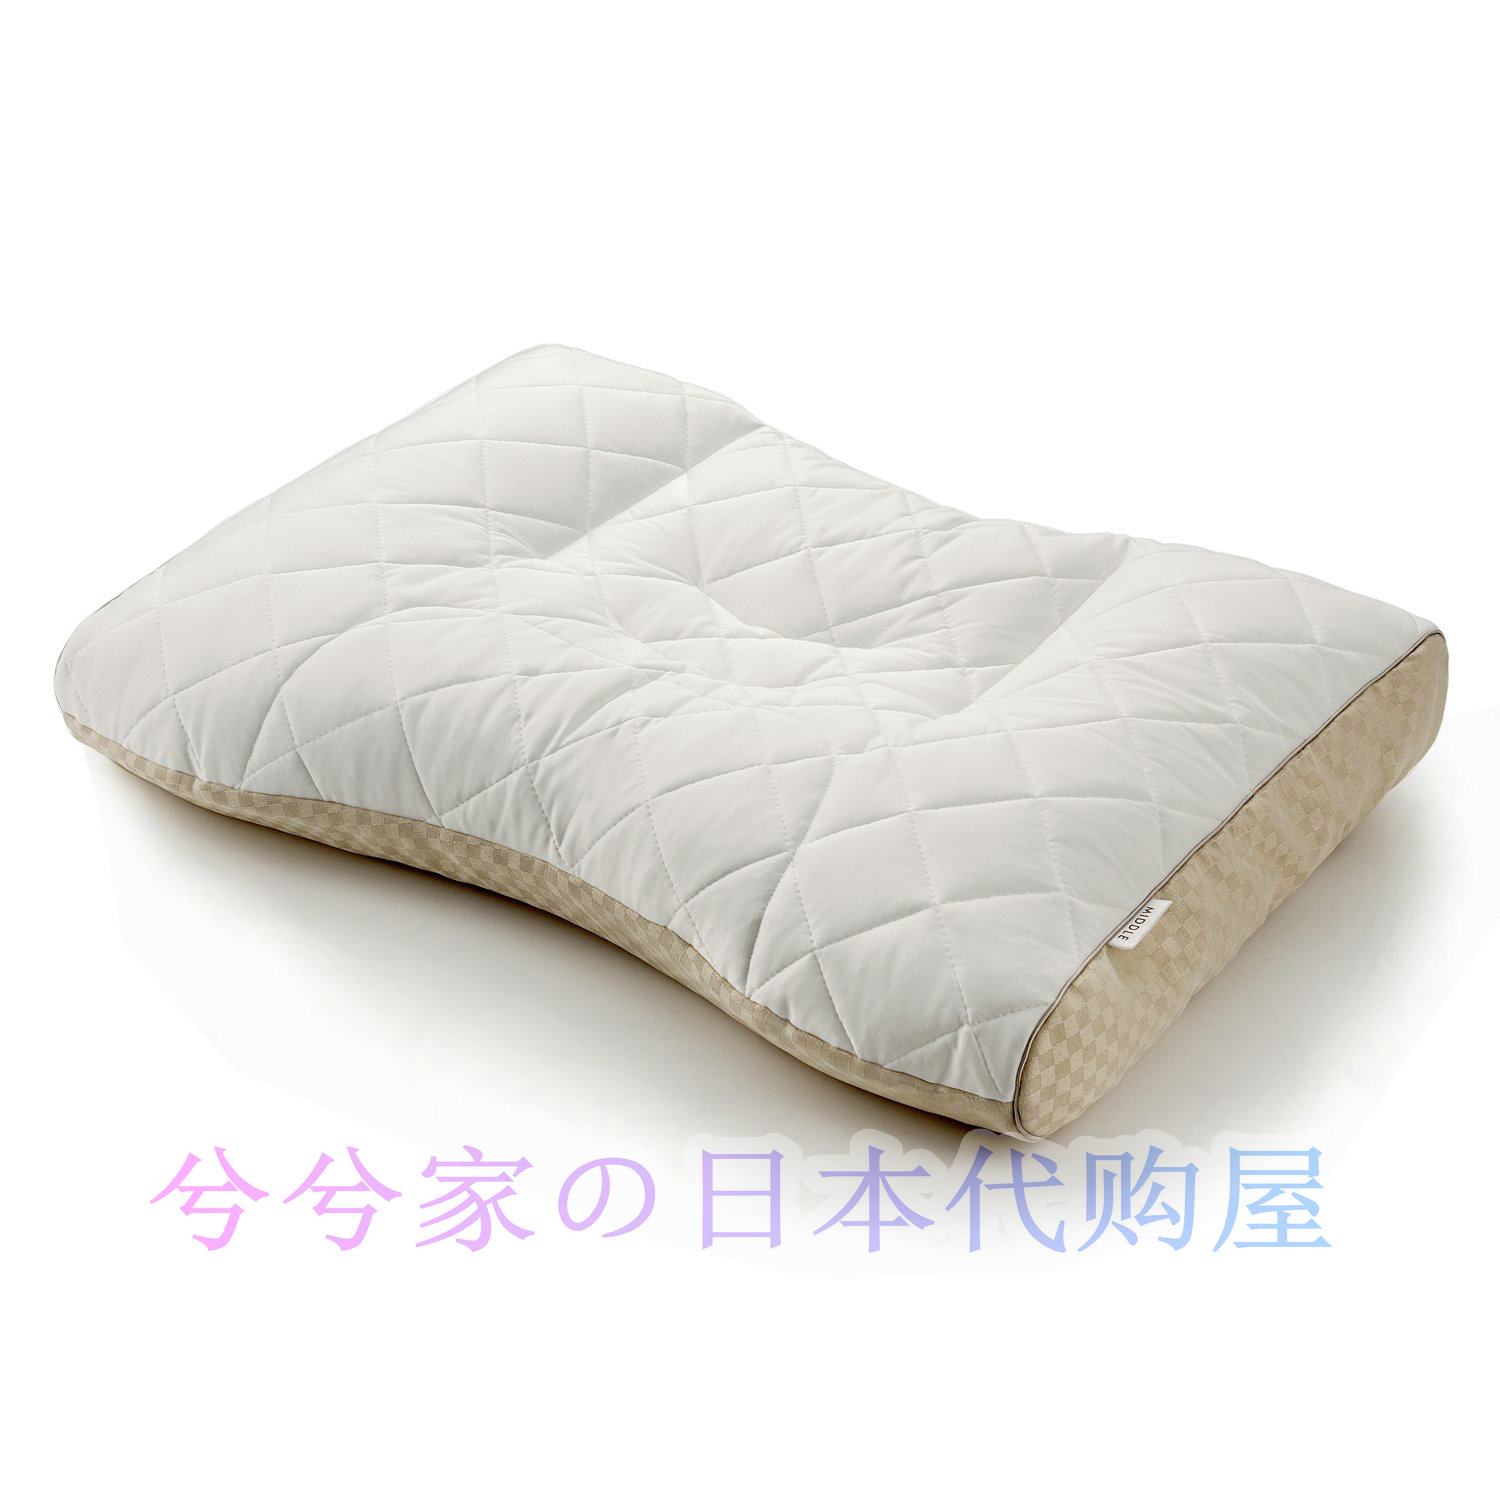 日本代购 东京西川finesmooth系列枕头 护颈护肩支撑颈椎健康枕头